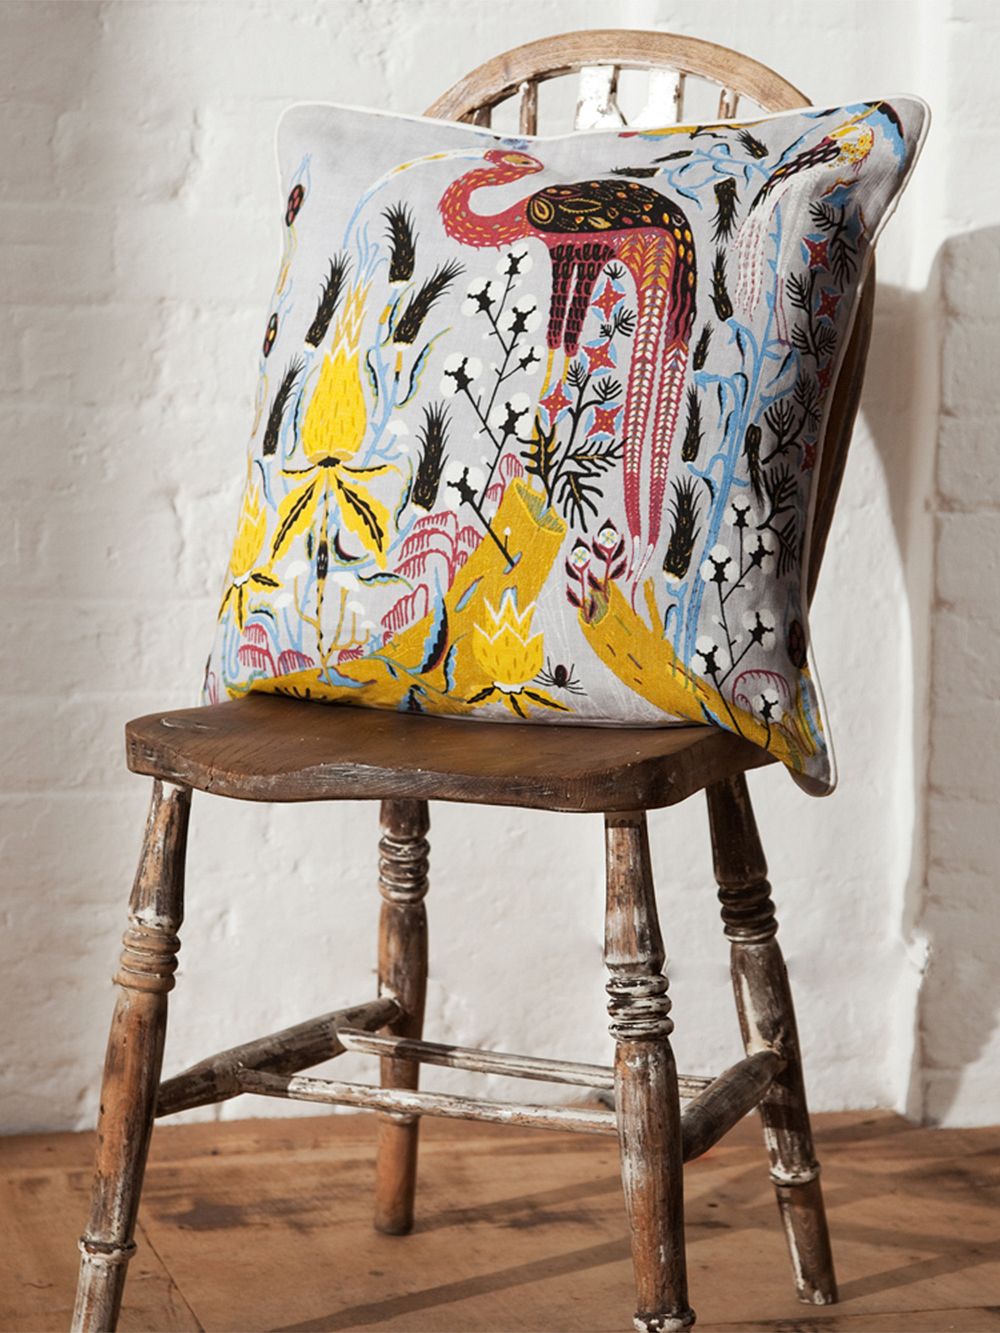 Klaus Haapaniemi's Crane cushion cover on chair